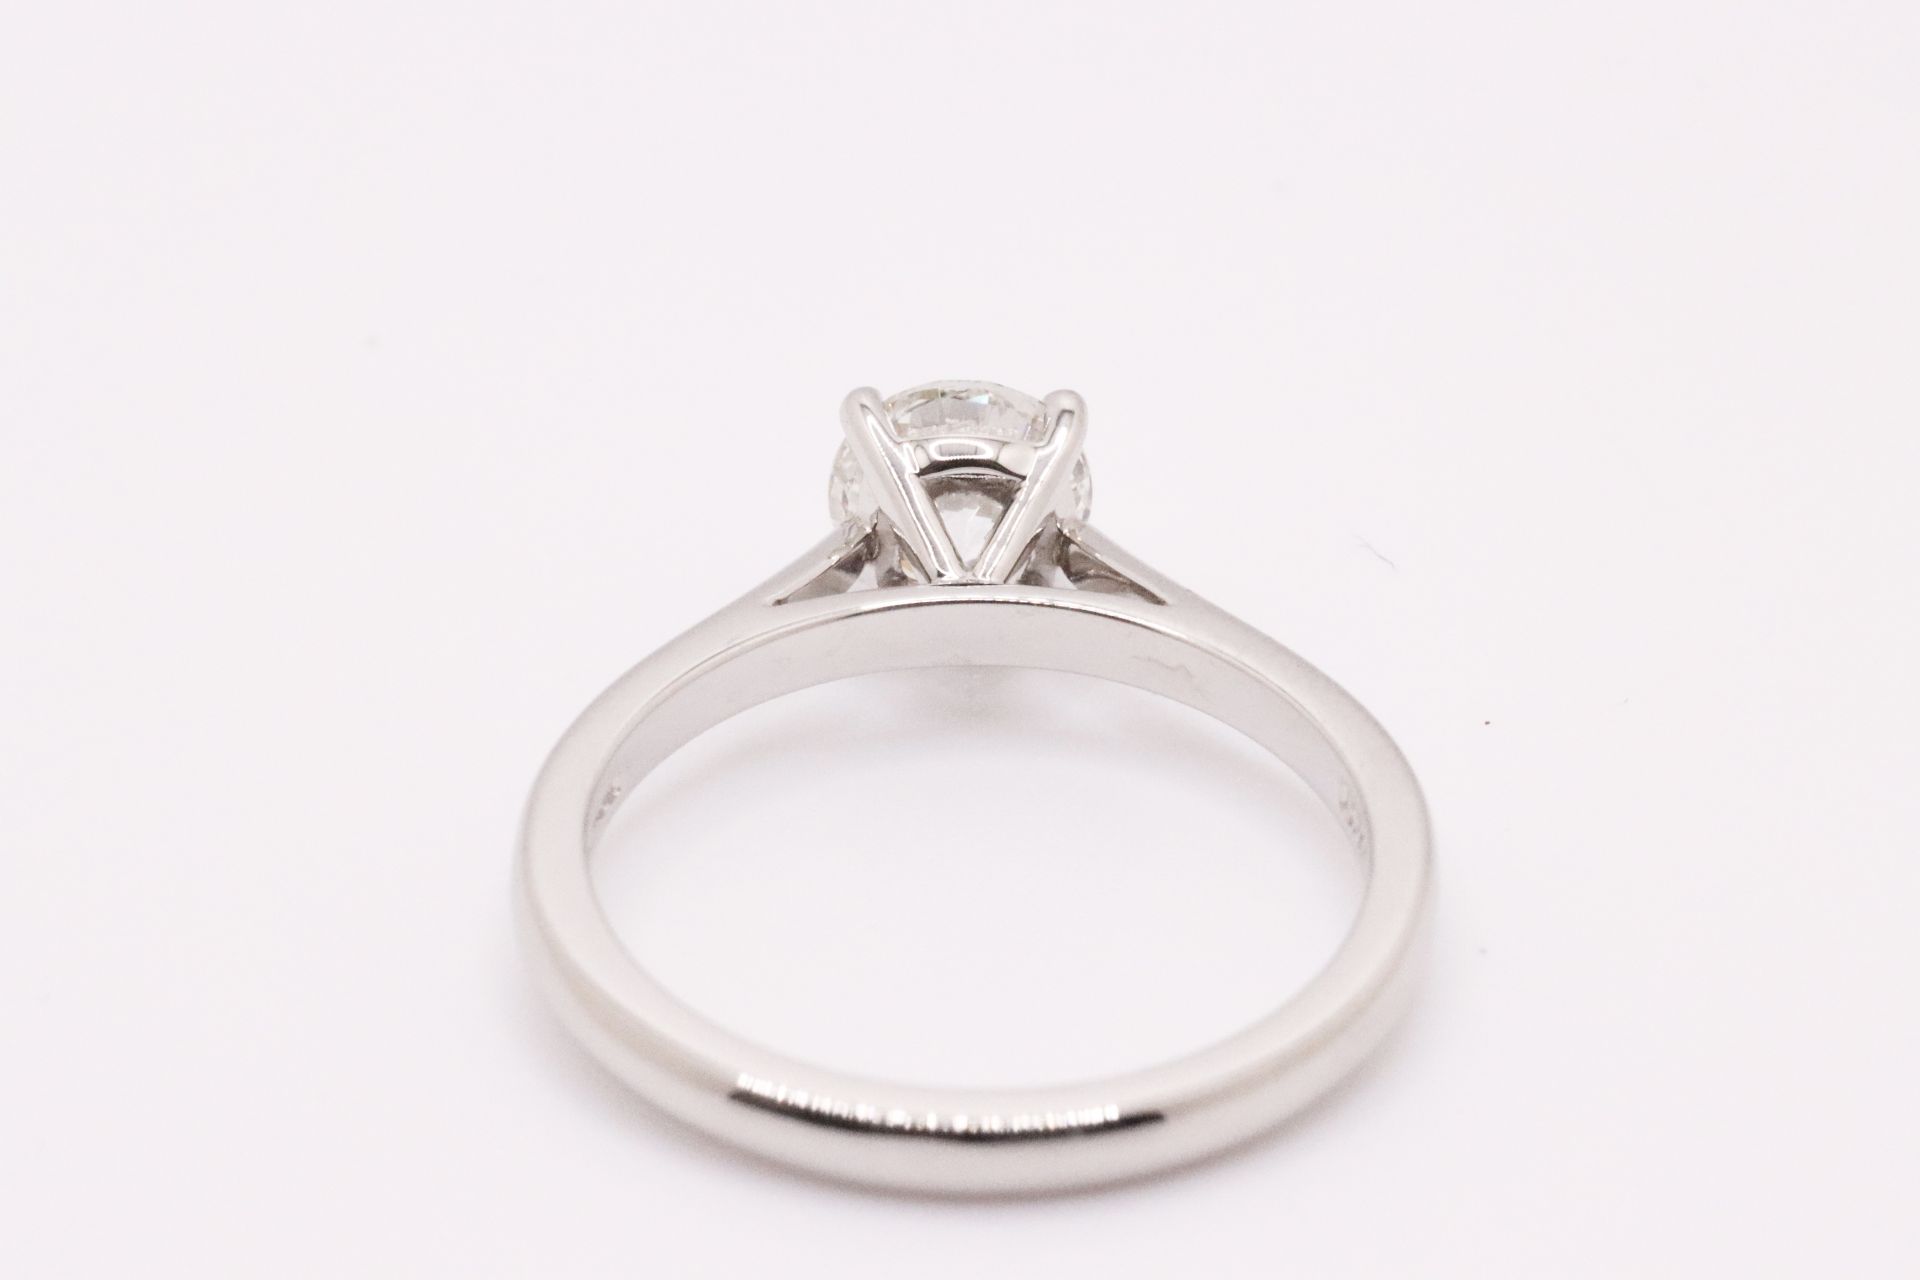 Round Brilliant Cut Natural Diamond Platinum Ring 1.20 Carat D Colour VS2 Clarity ID EX EX - GIA - Image 4 of 6